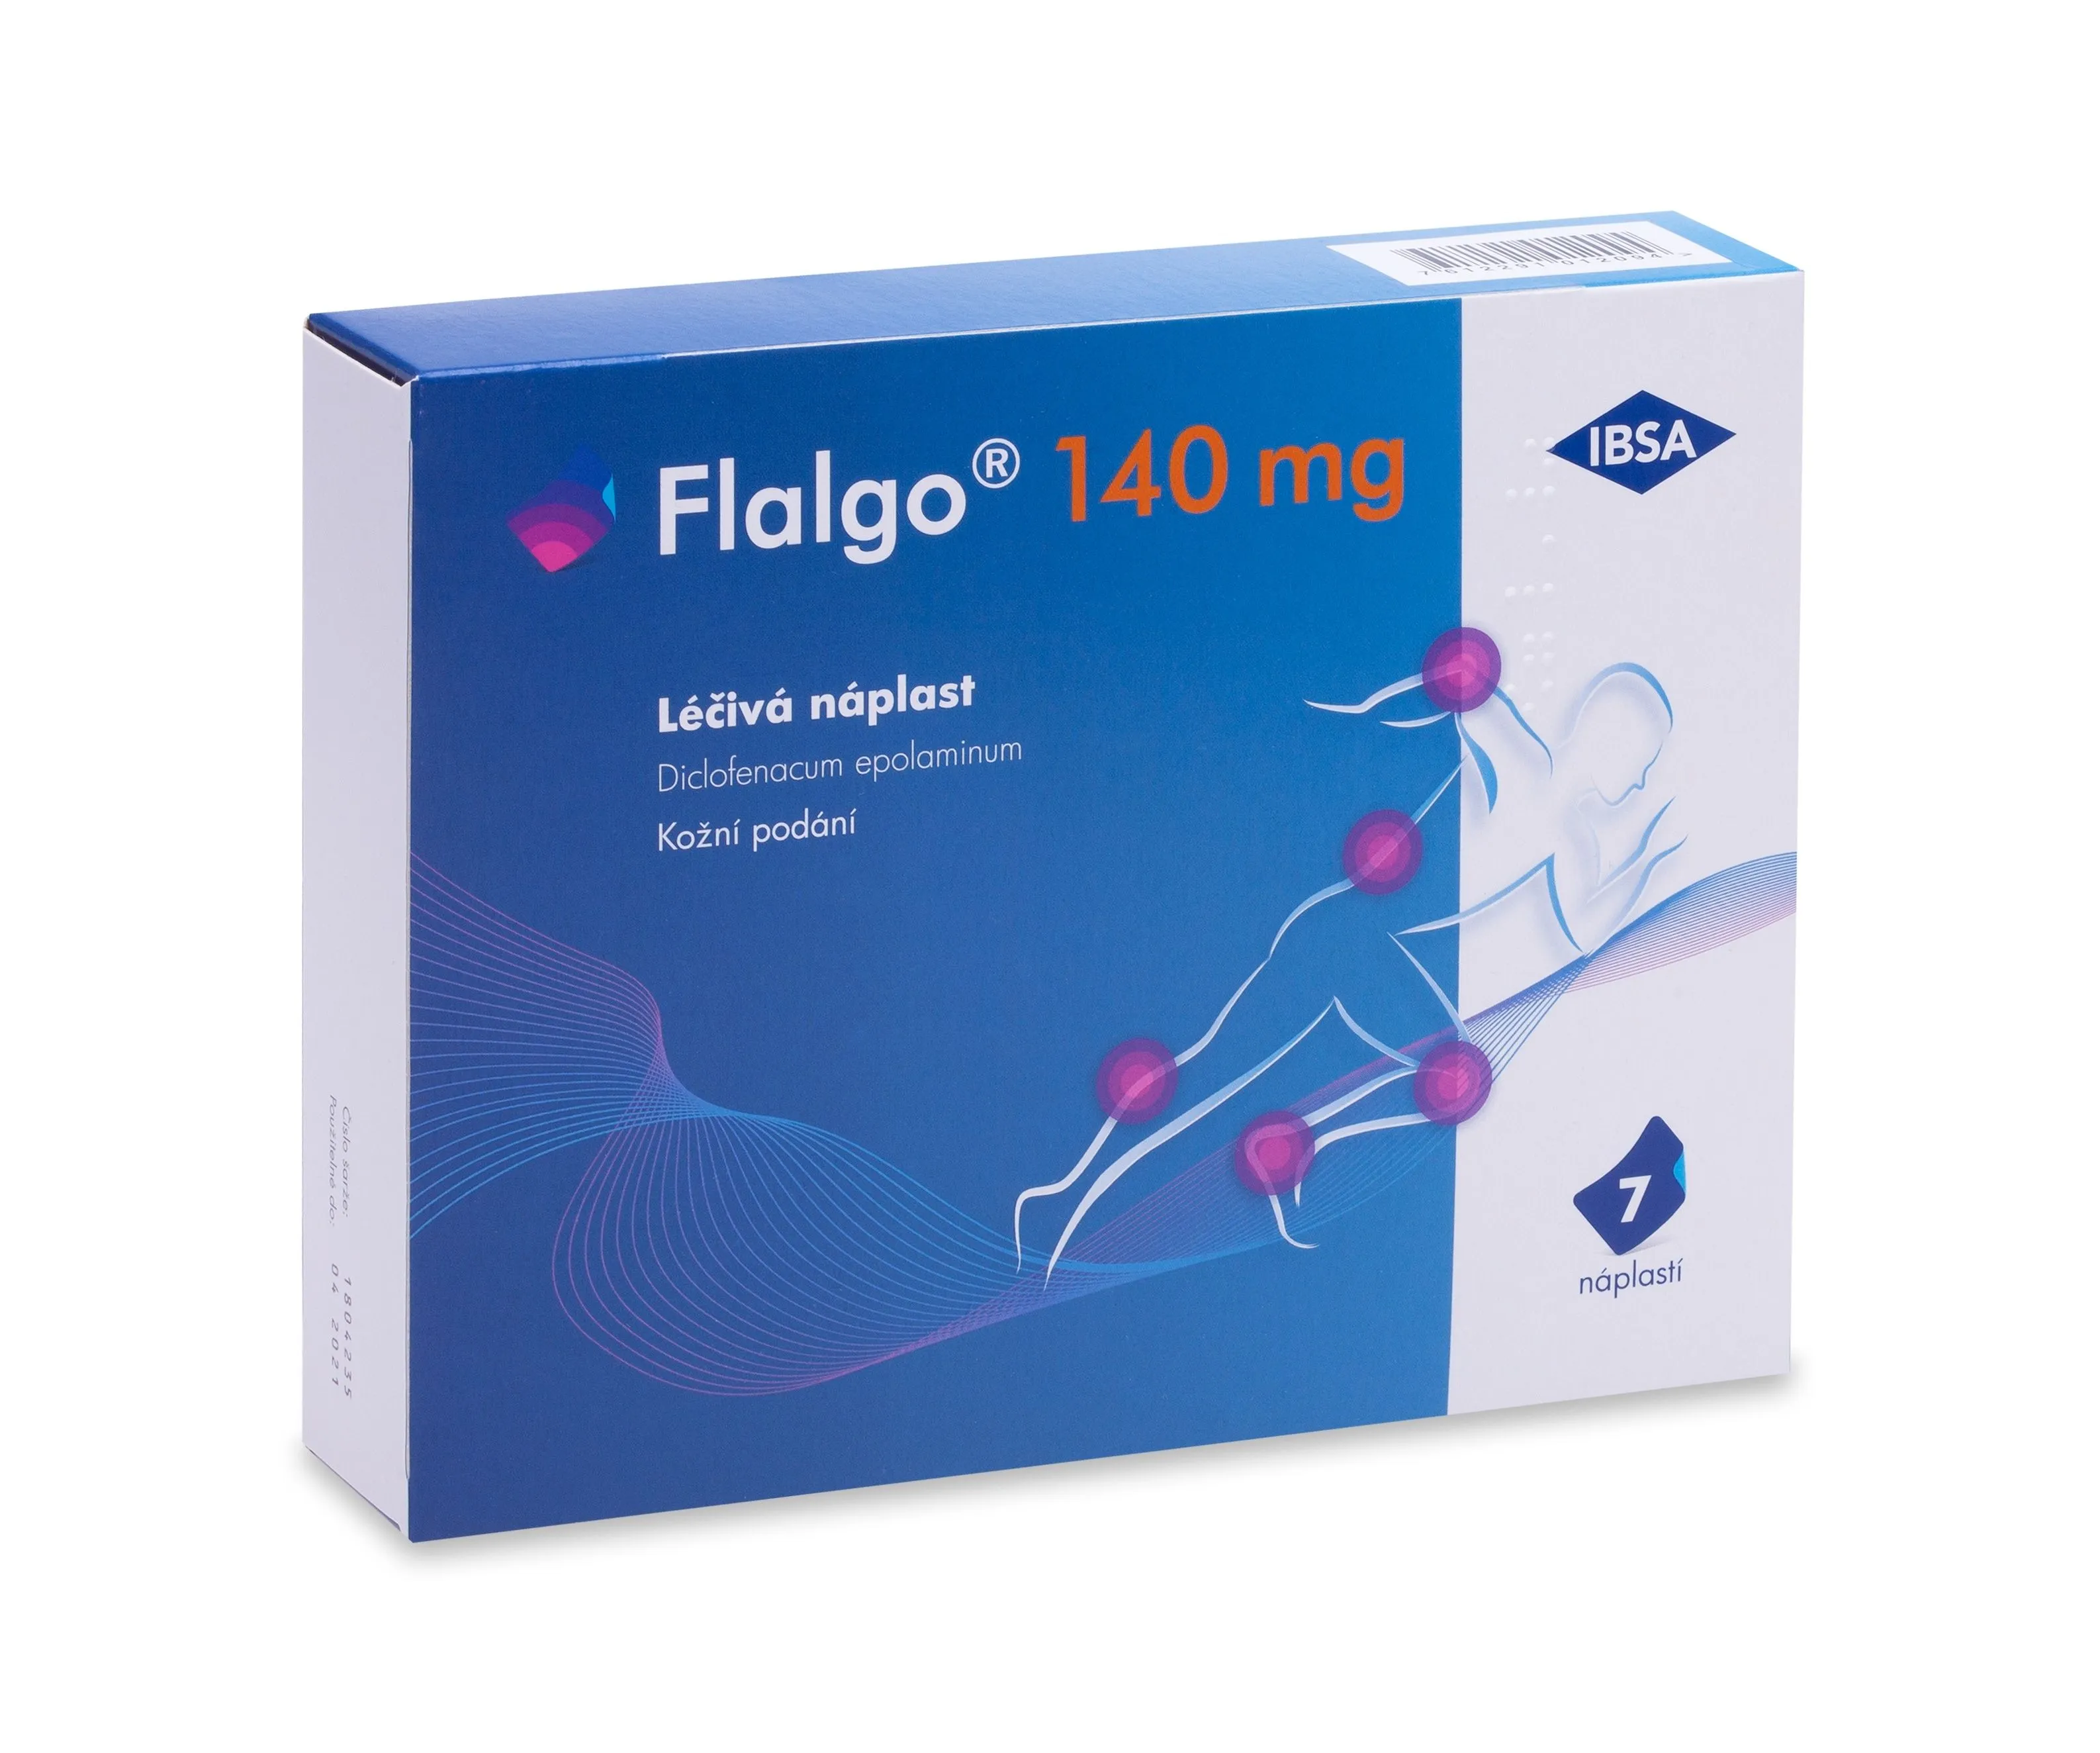 Flalgo 140 mg 7 náplastí